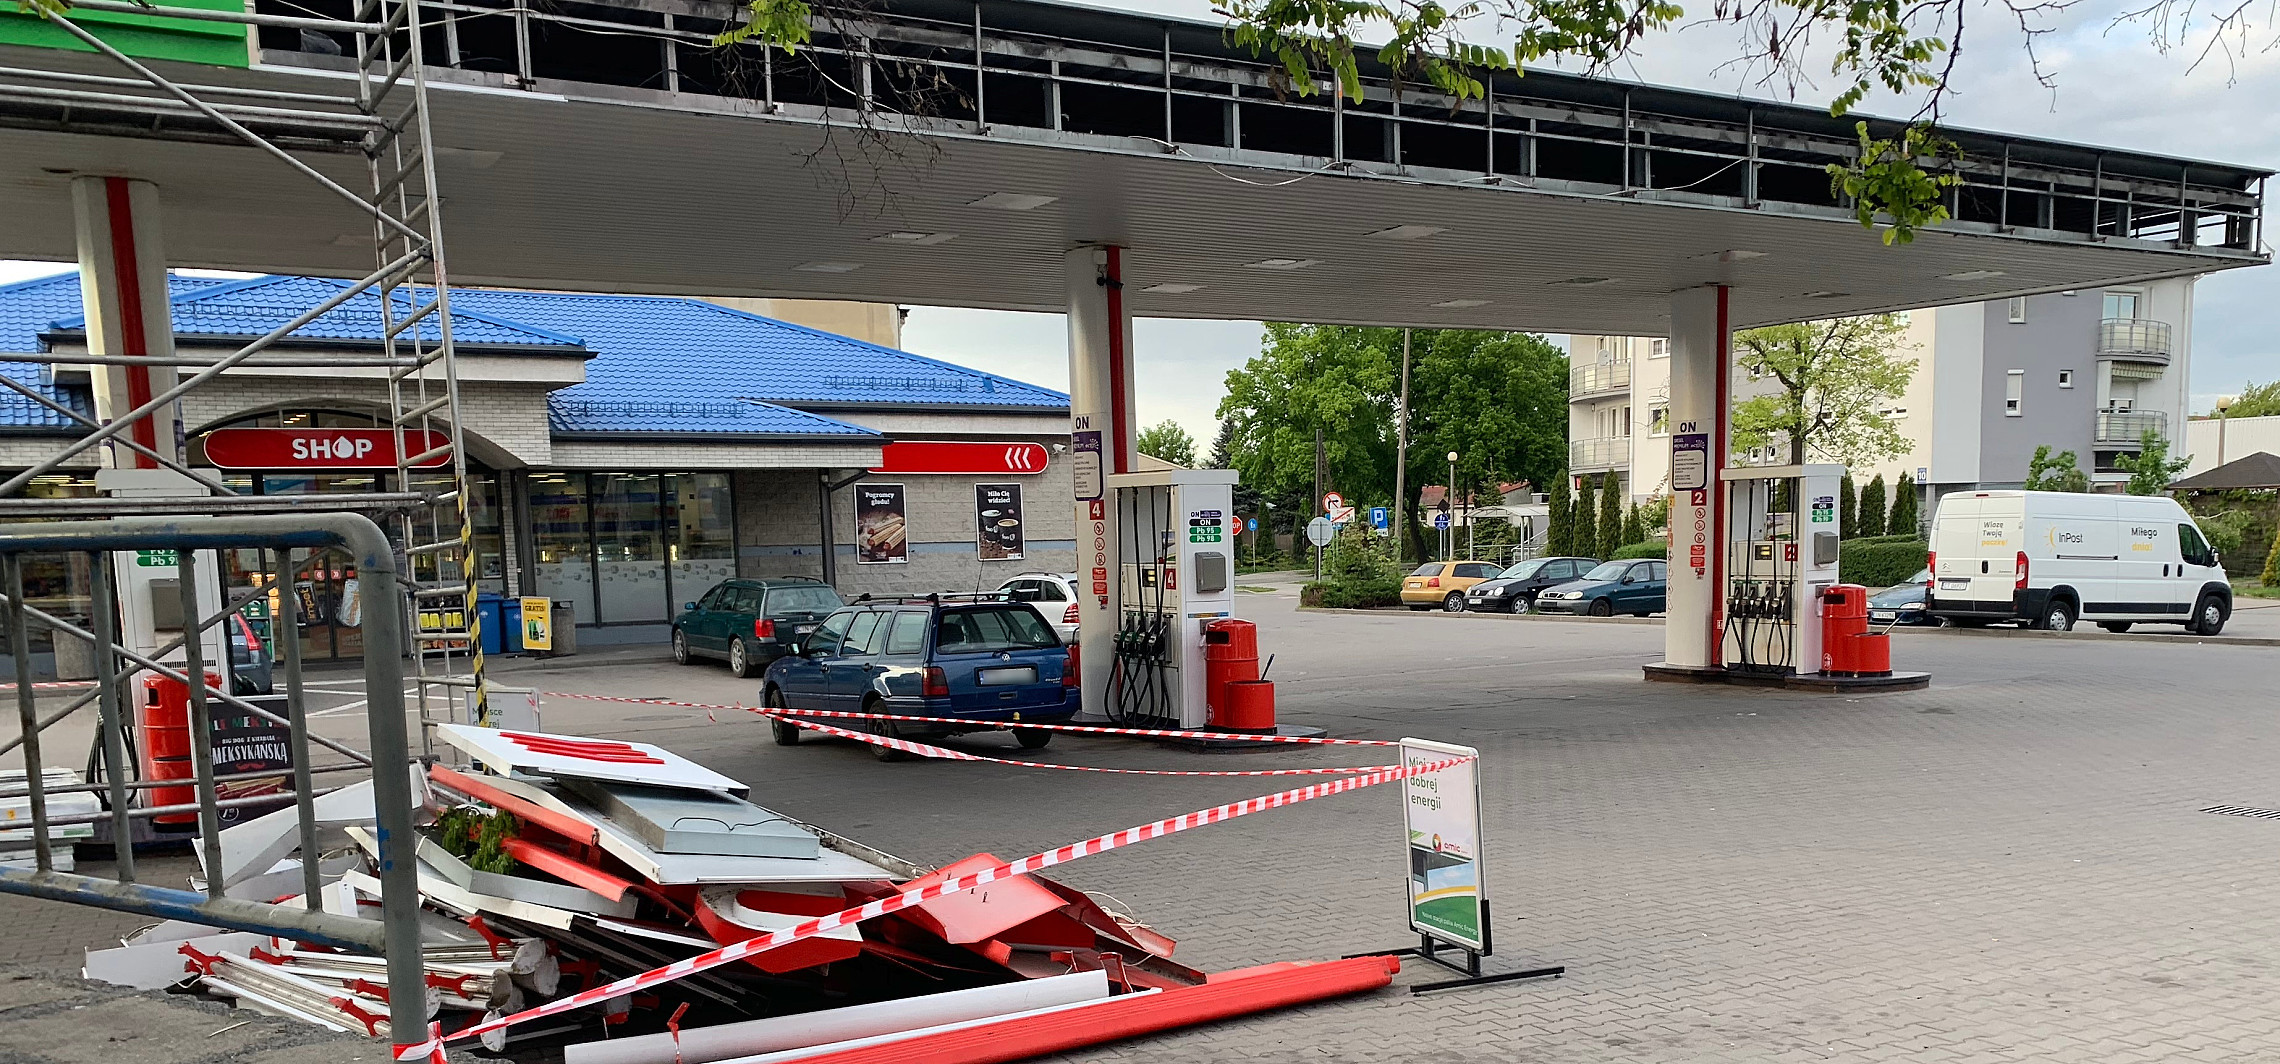 Inowrocław - Już nie Łukoil. Nowy szyld stacji paliw